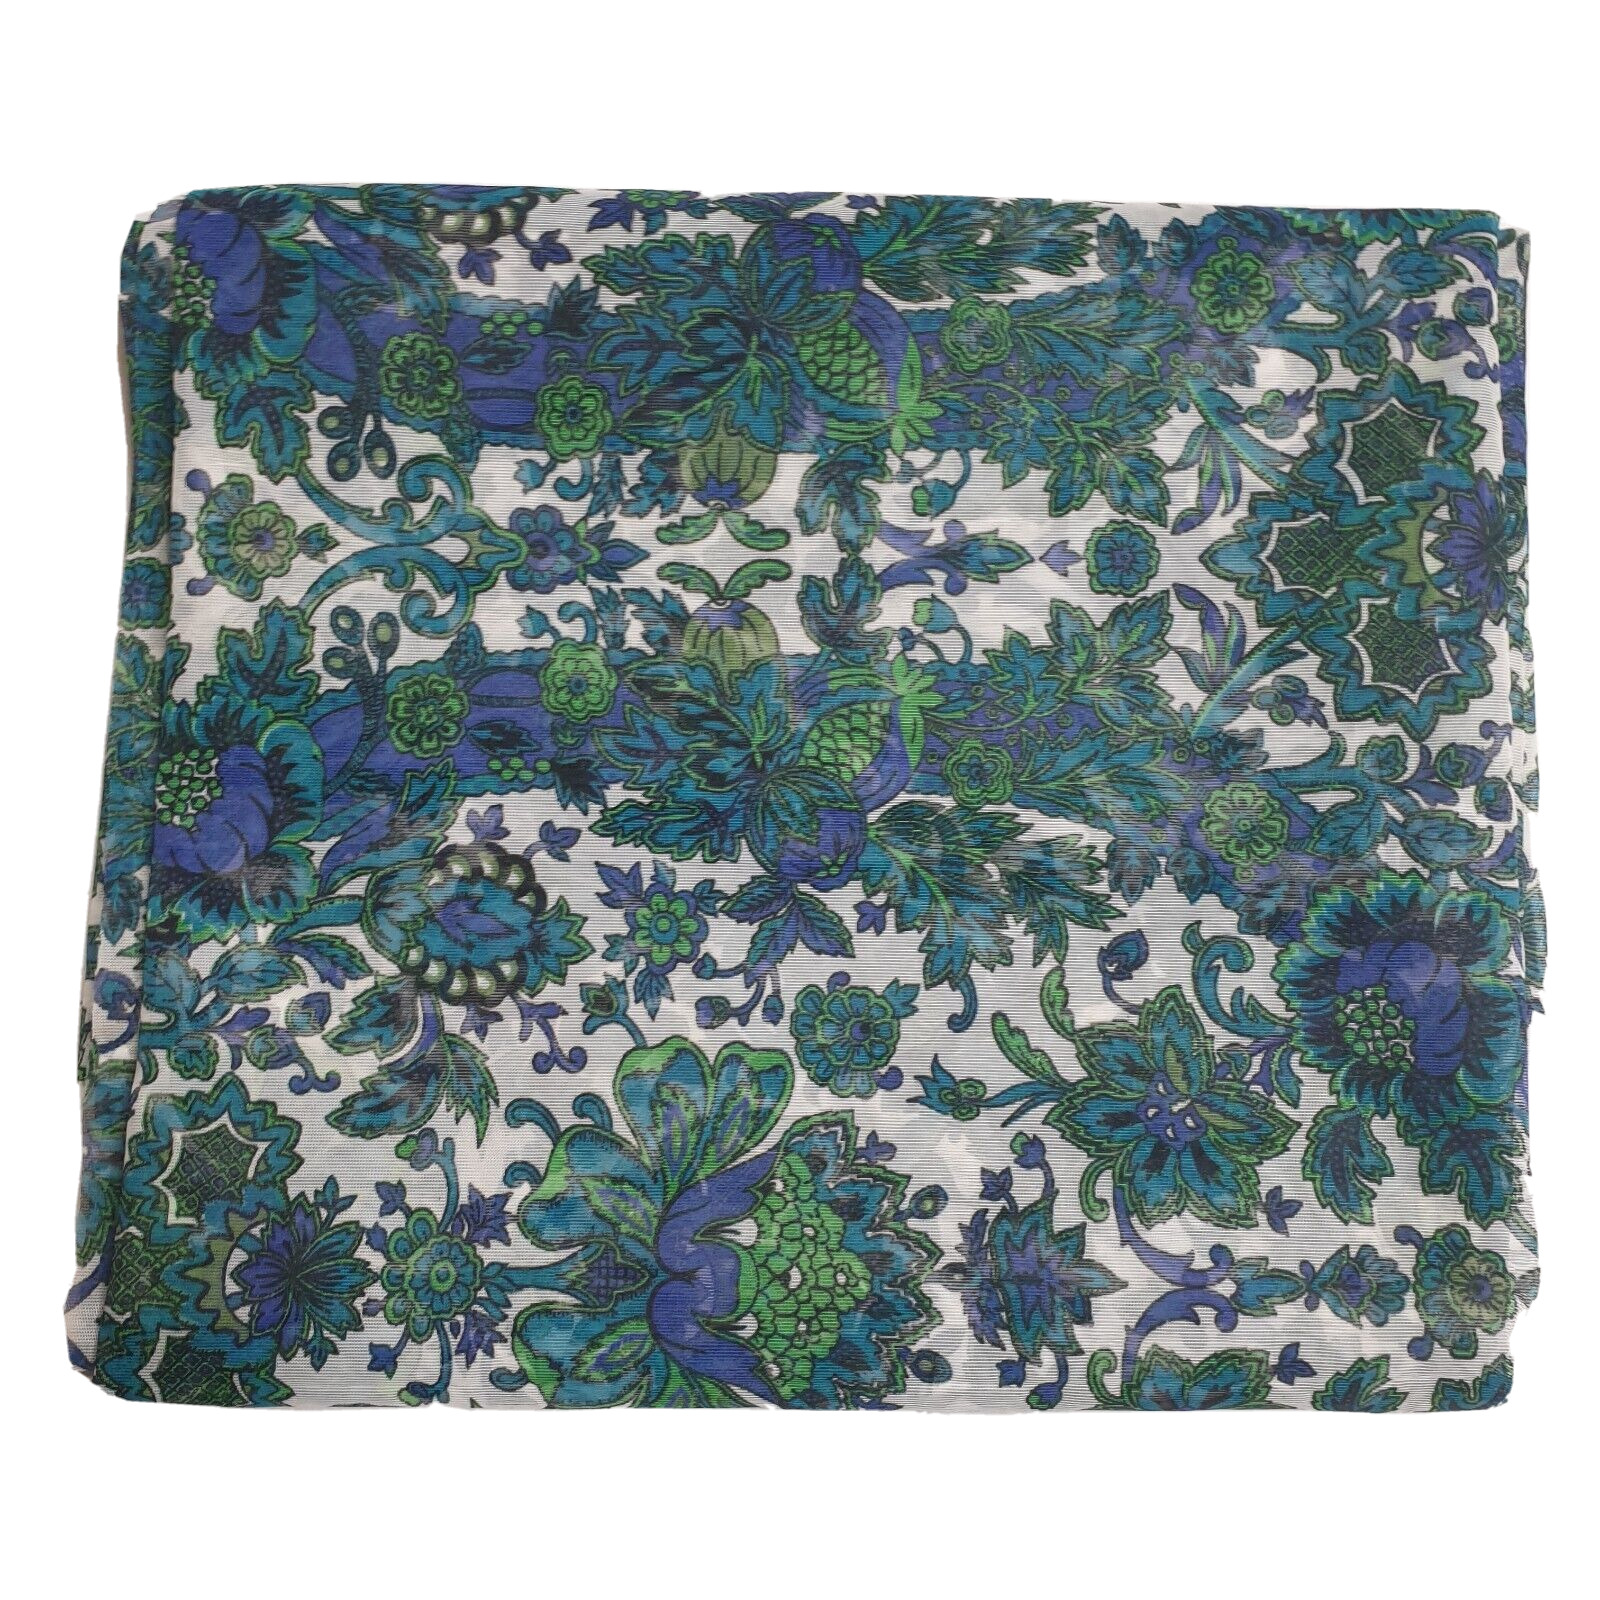 Vintage 1960s Blue Paisley Fabric 284cm x 121cm